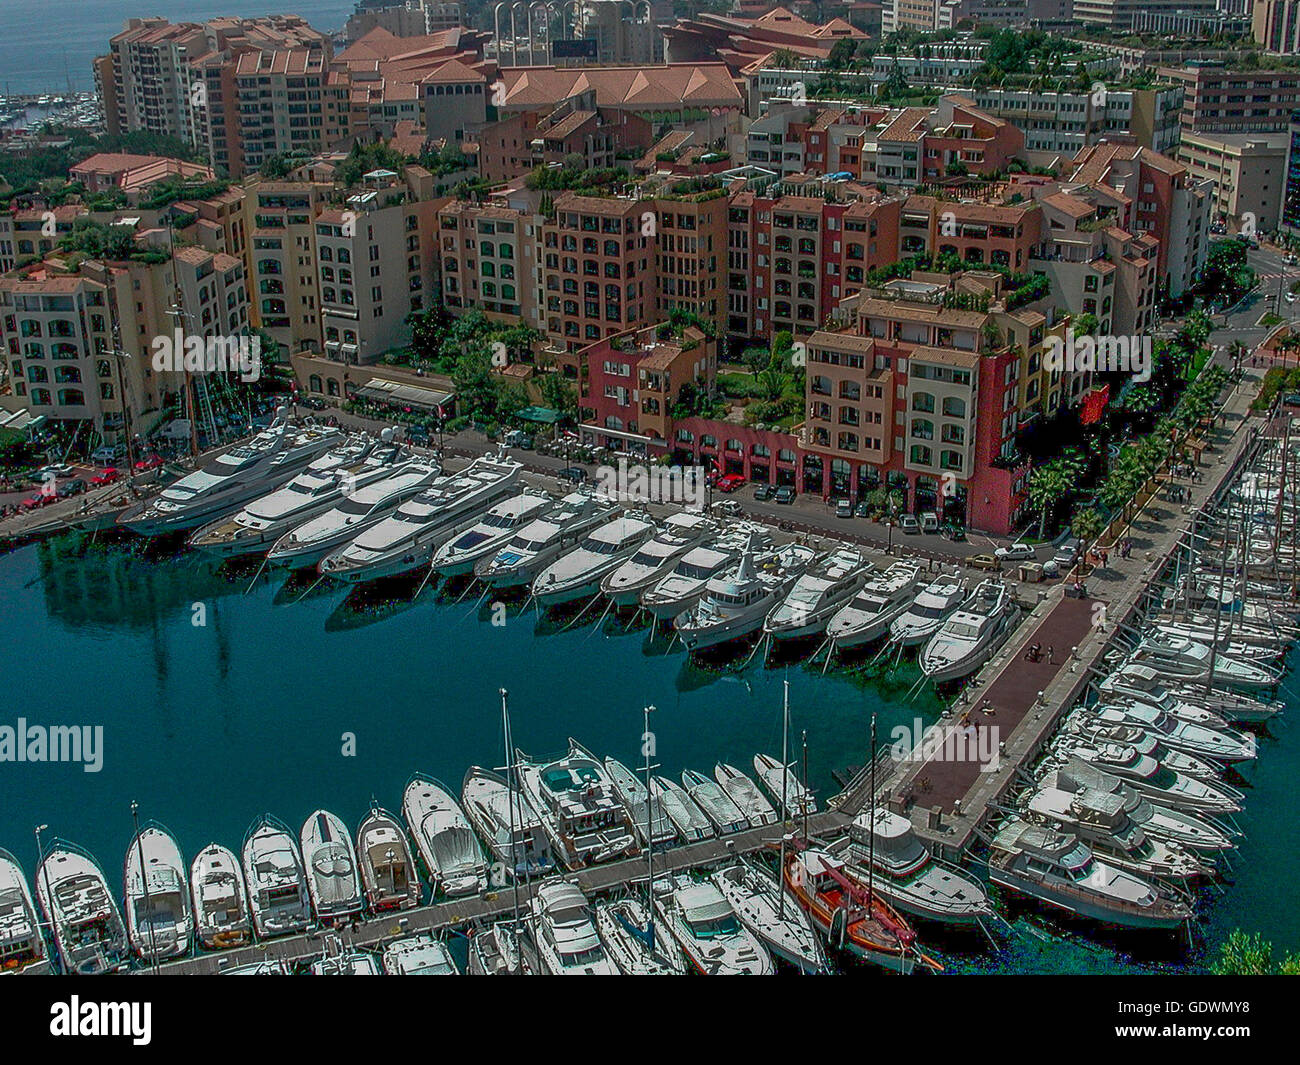 Le port de Fontvieille vu de la place du palais, Monaco Banque D'Images